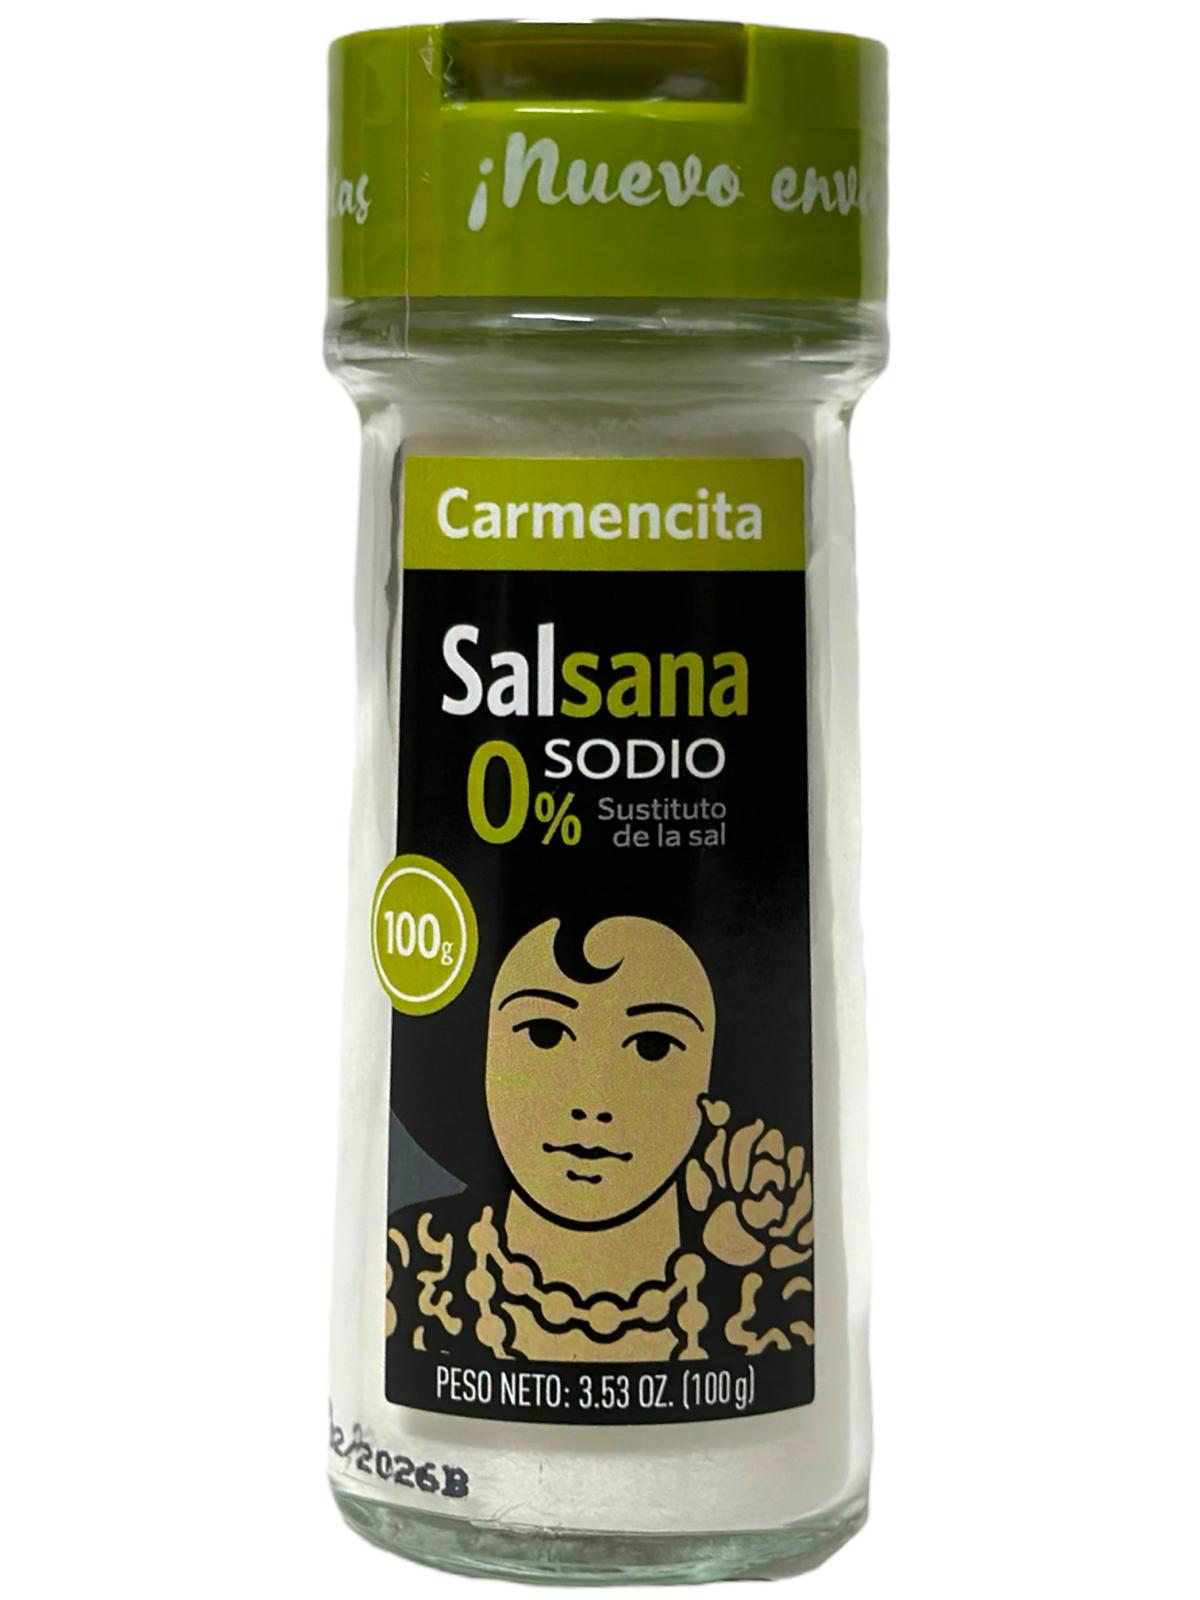 Carmencita Salsana 0% Sodium Salt 100g - 6 pack 600g total